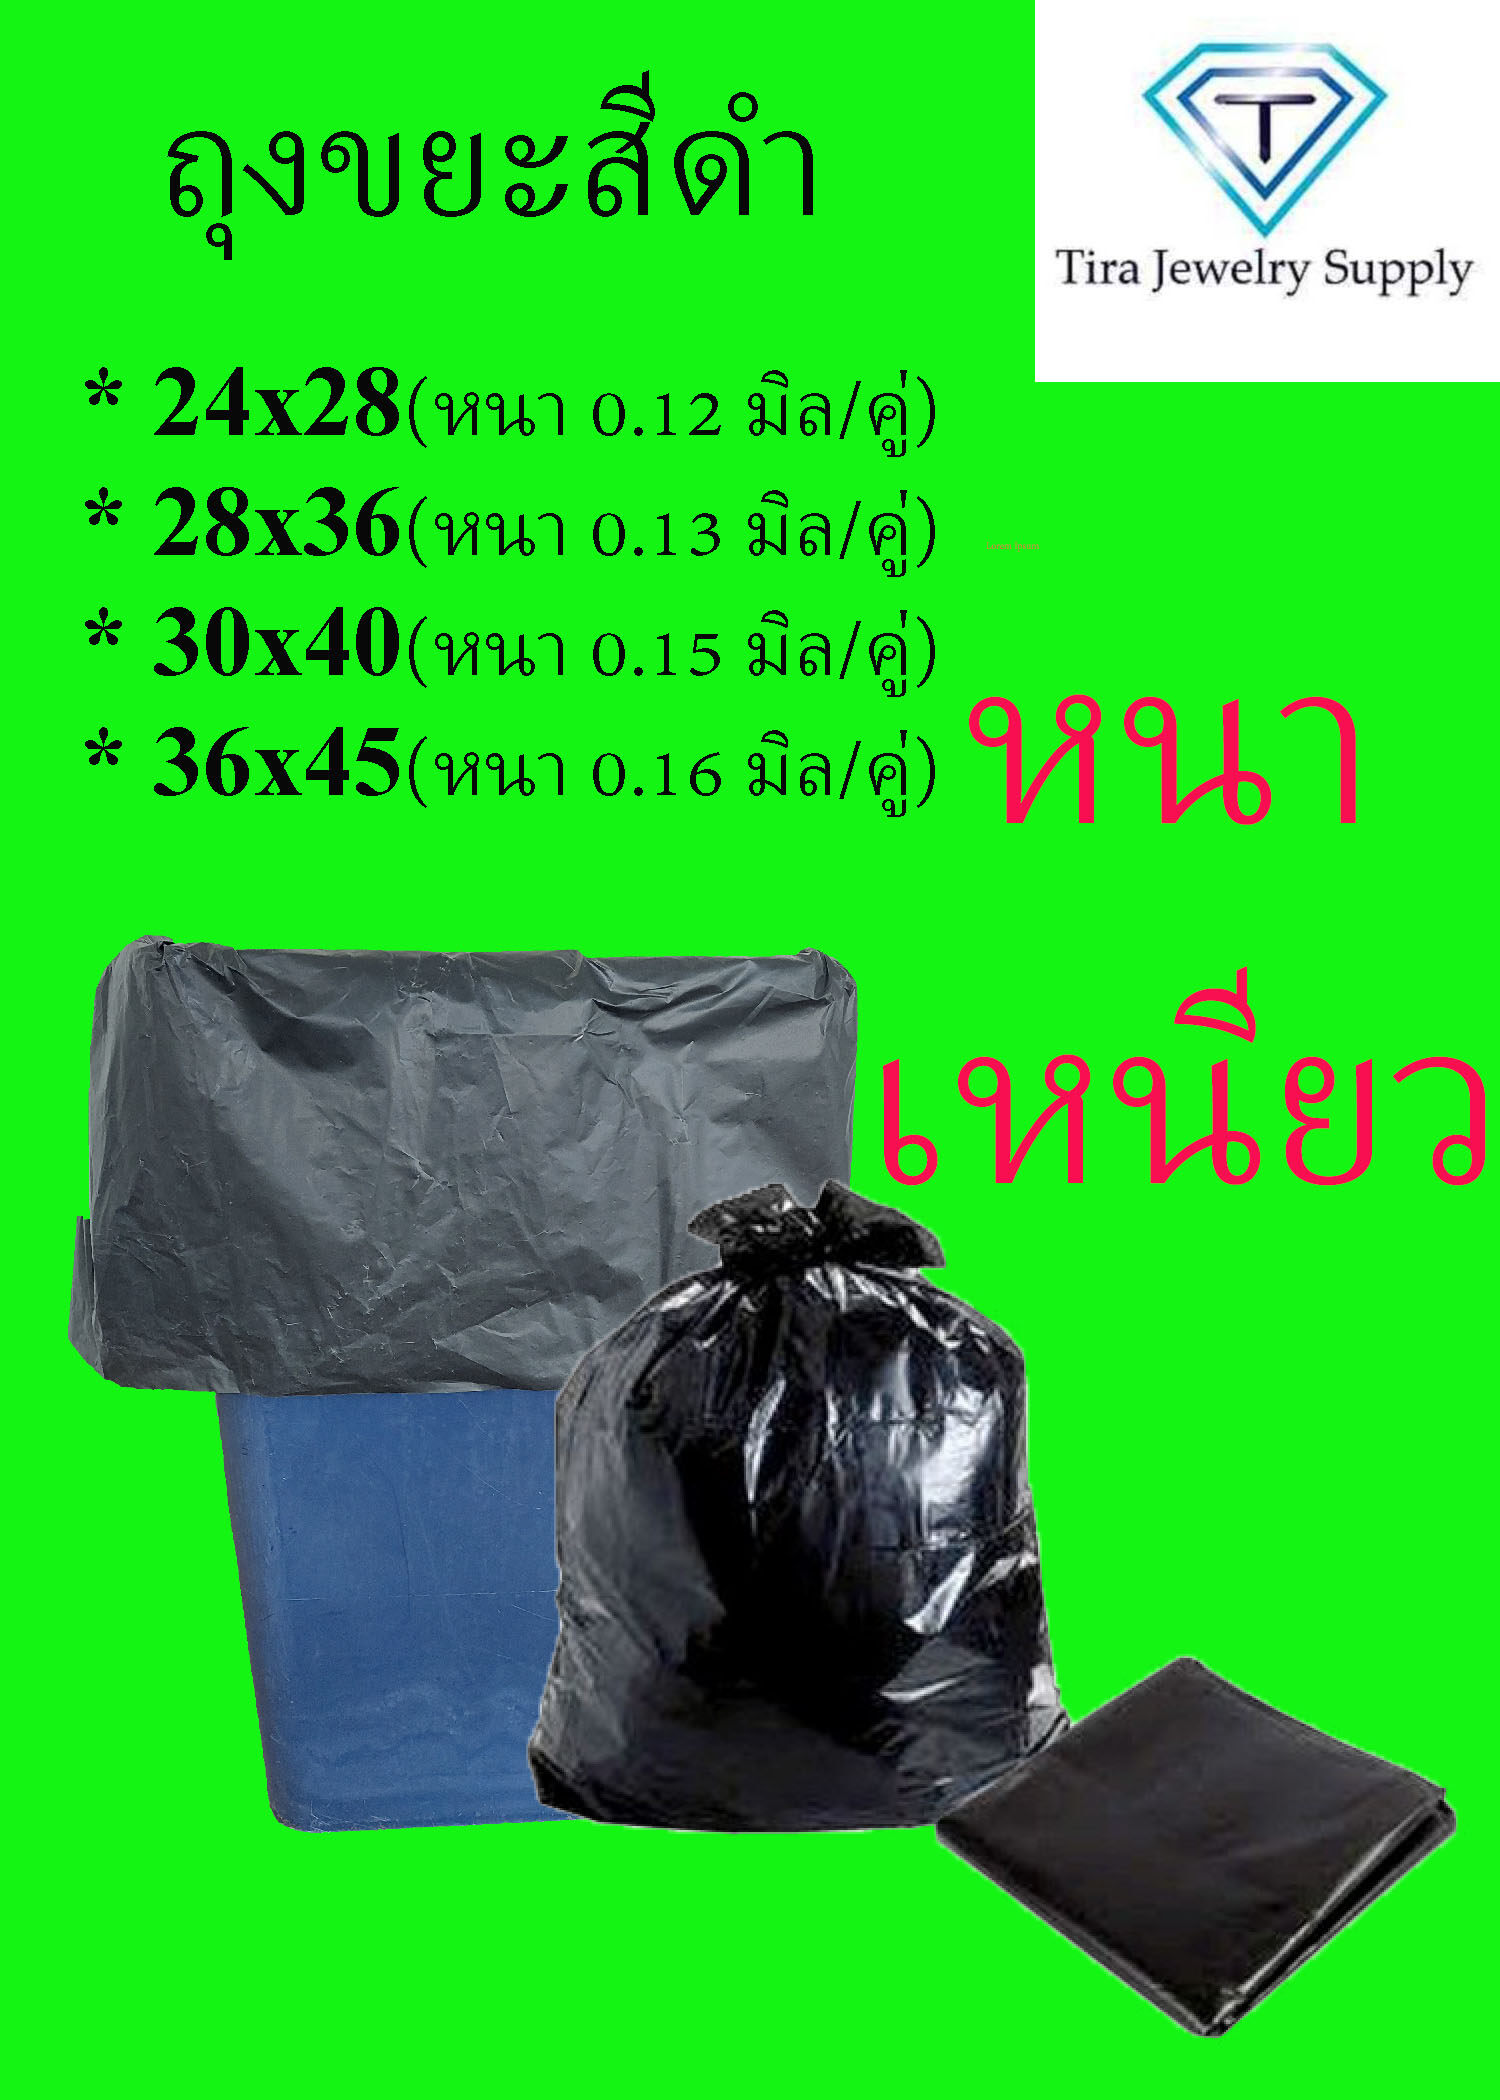 ถุงขยะ ถุงใส่ขยะ ถุงดำใส่ขยะ  ถุงขยะดำ ถุงขยะหนา ถุงขยะเหนียว ถุงขยะไซส์ใหญ่ 24x28 / 28x36 / 30*40 / 36x45  ราคาโรงงาน แพคละ 1 kg